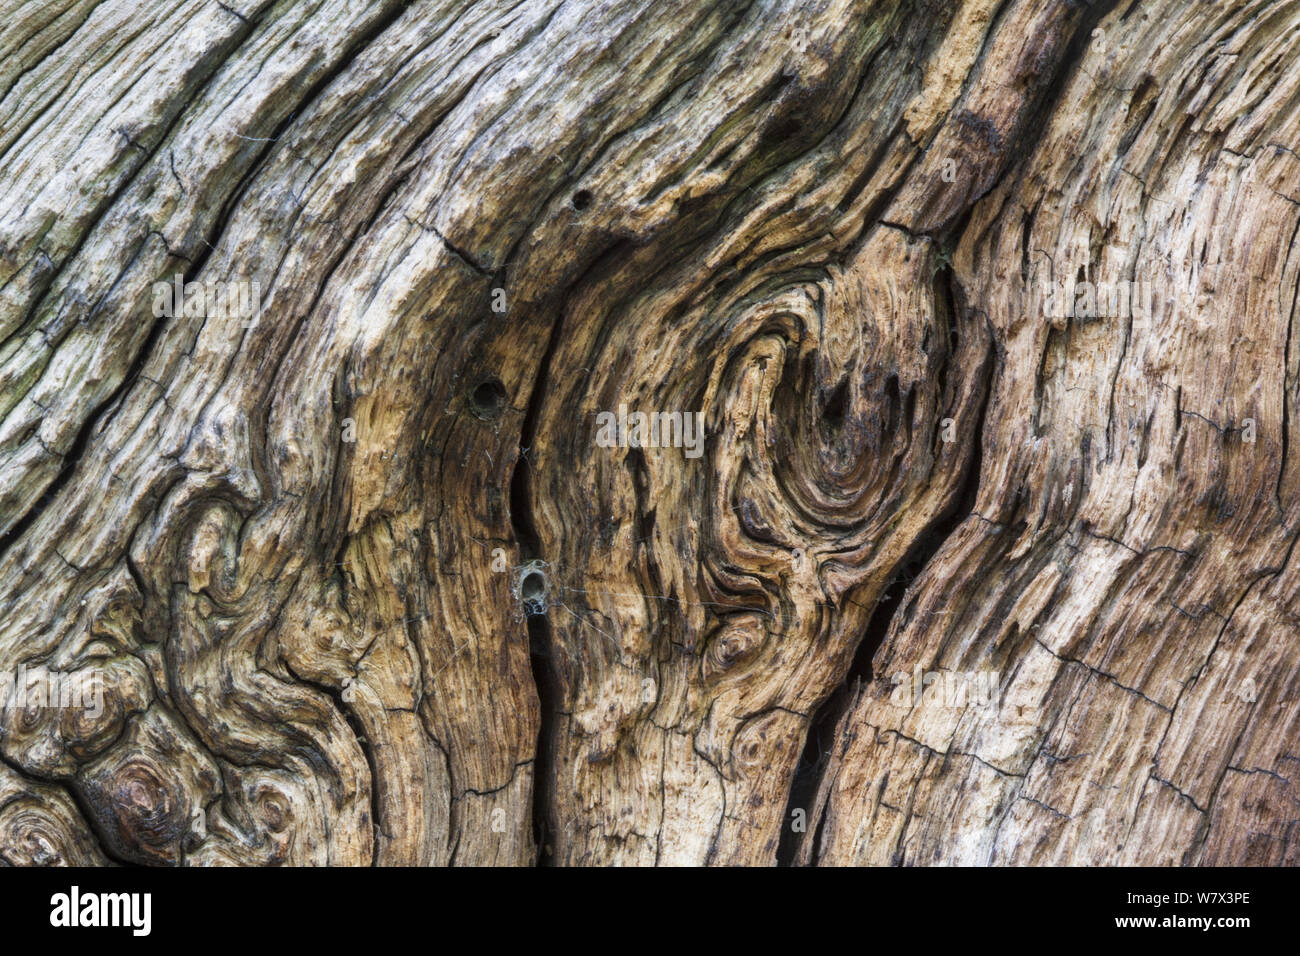 Close up di un veterano inglese quercia (Quercus robur), che mostra la zona di legno morto che è un importante habitat per una vasta gamma di invertebrati tra cui web di imbuto spider web. Derbyshire, Regno Unito. Settembre. Foto Stock